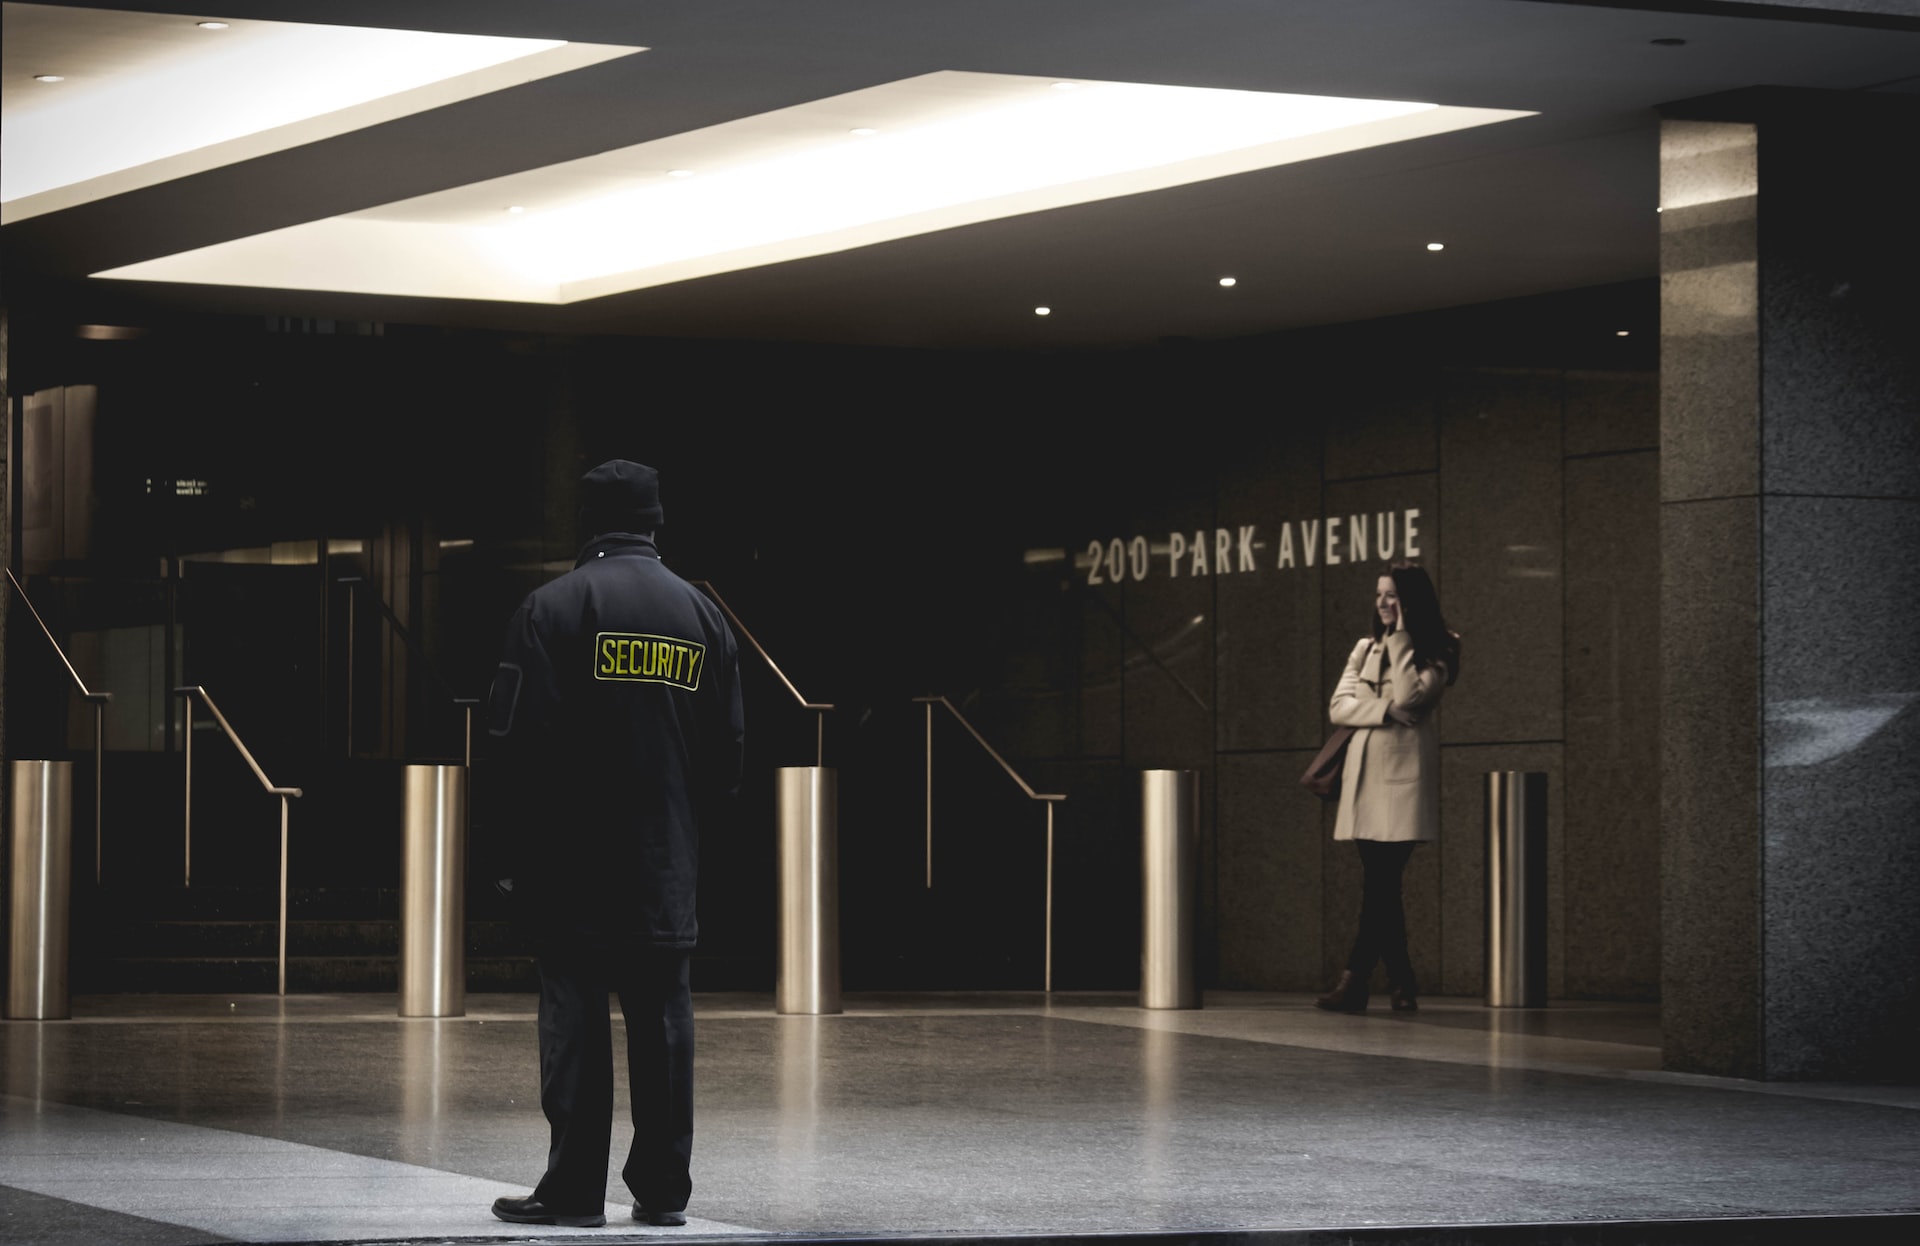 Curs agent securitate: cheia pentru o cariera de succes in paza centrelor comerciale